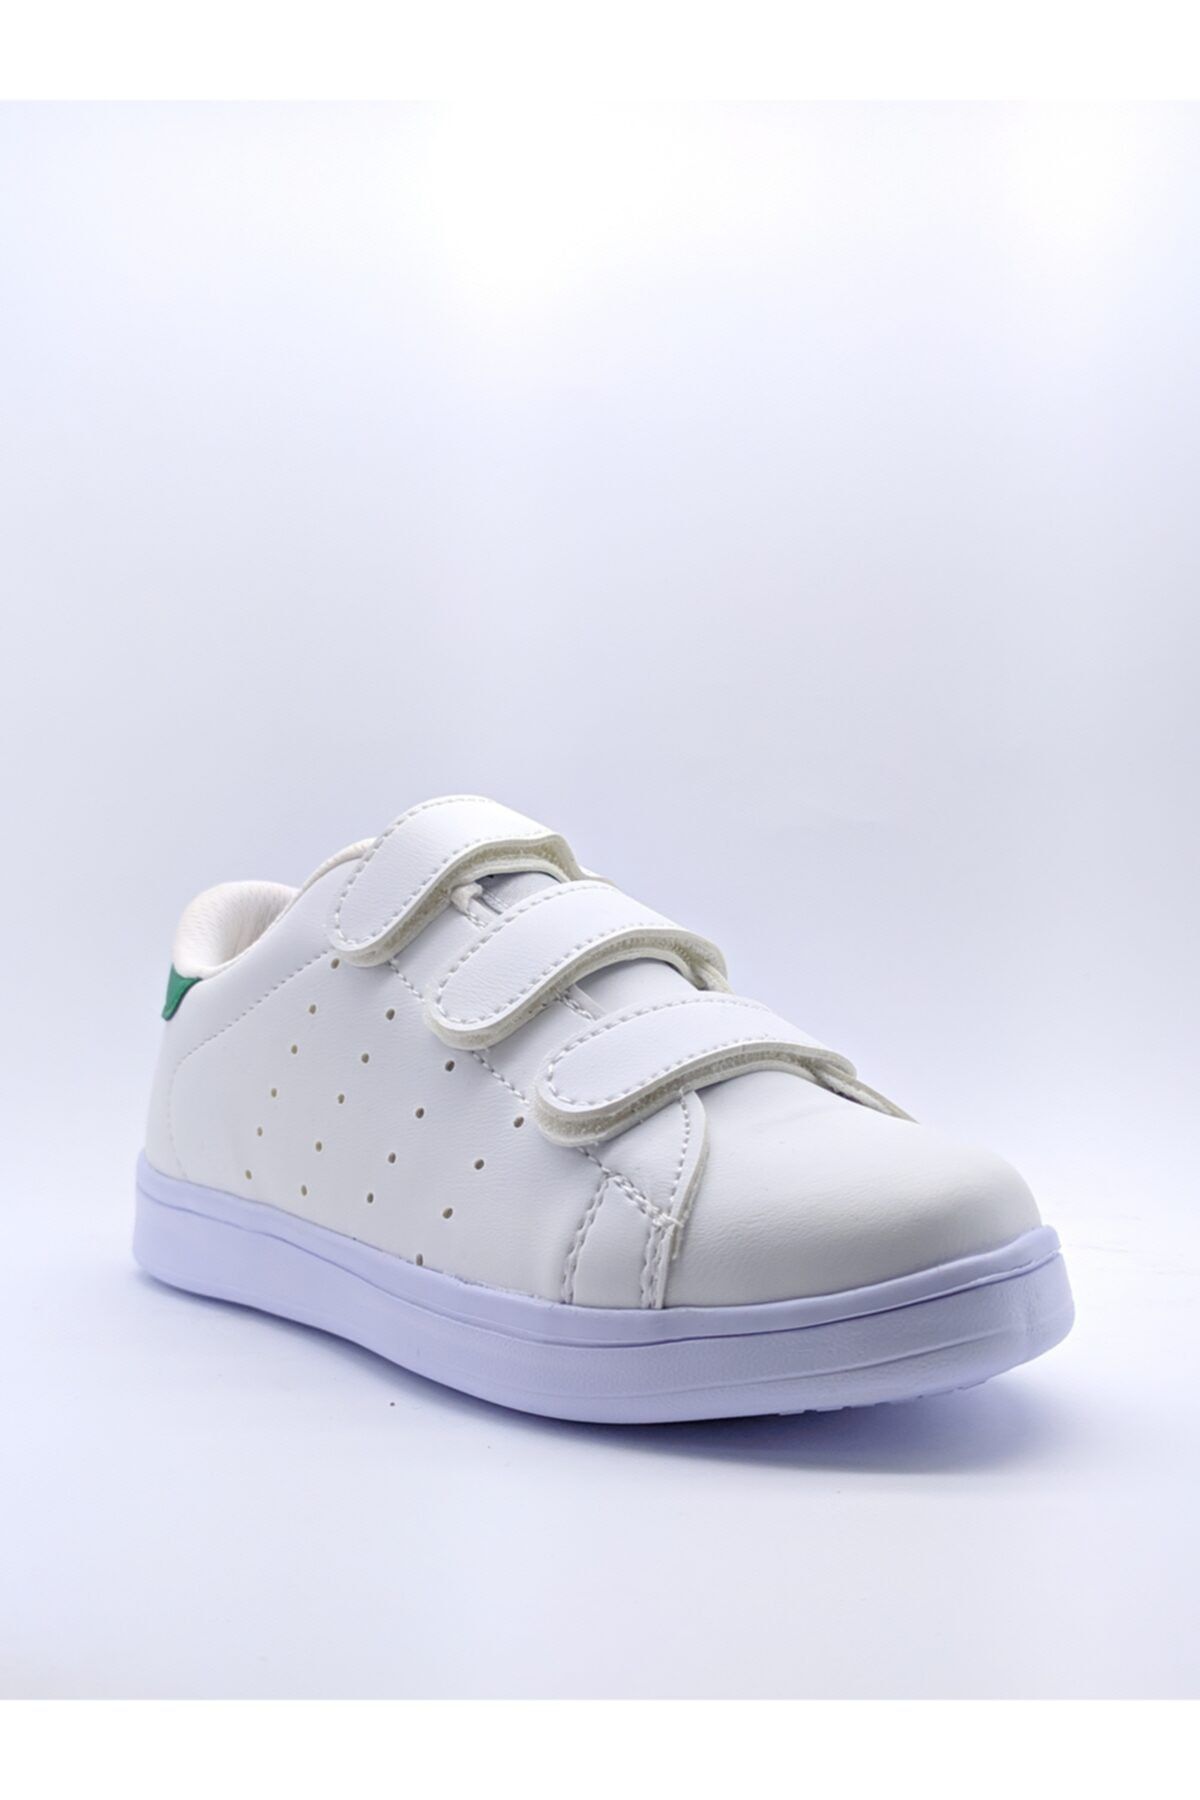 Venuma Unisex Mikrofiber Cırtlı Sneaker Ayakkabı 6 Ay Garantili Yerli Üretim Beyaz 308